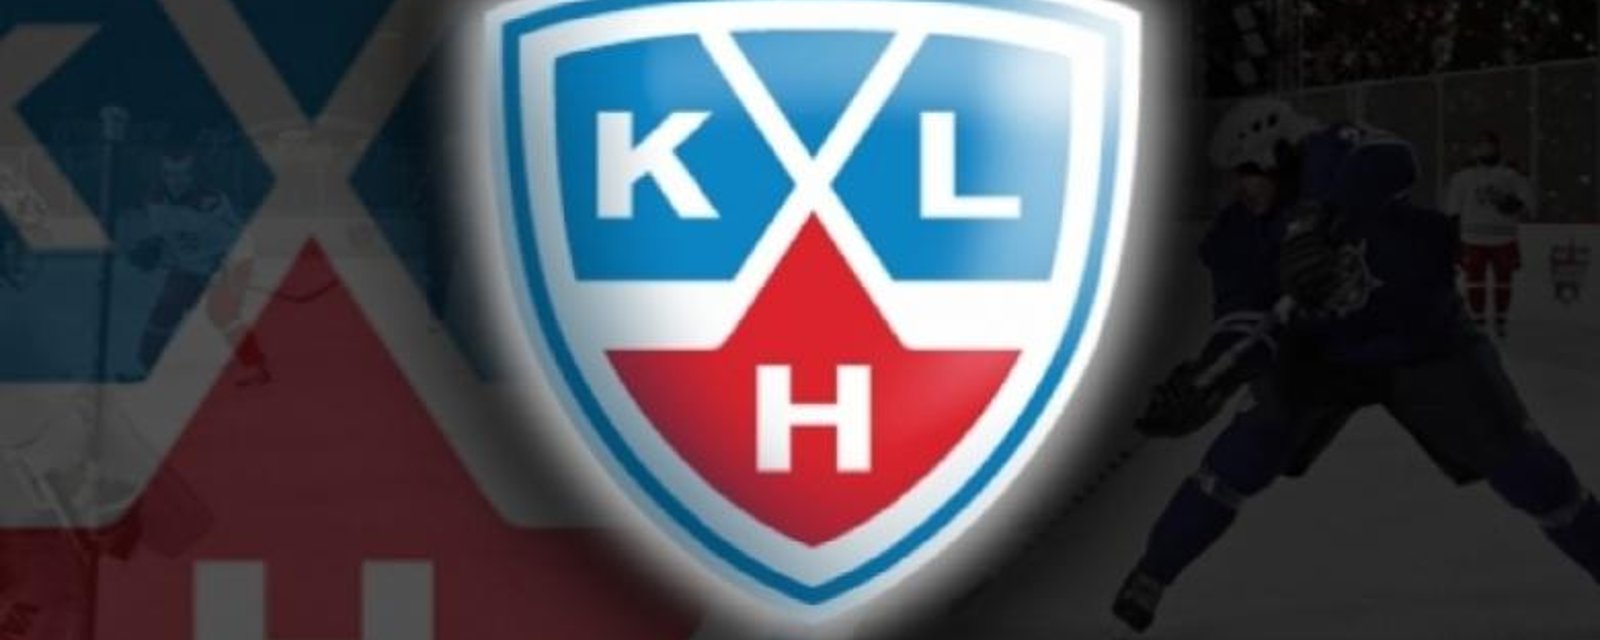 Un autre joueur de la LNH quitte pour la KHL!